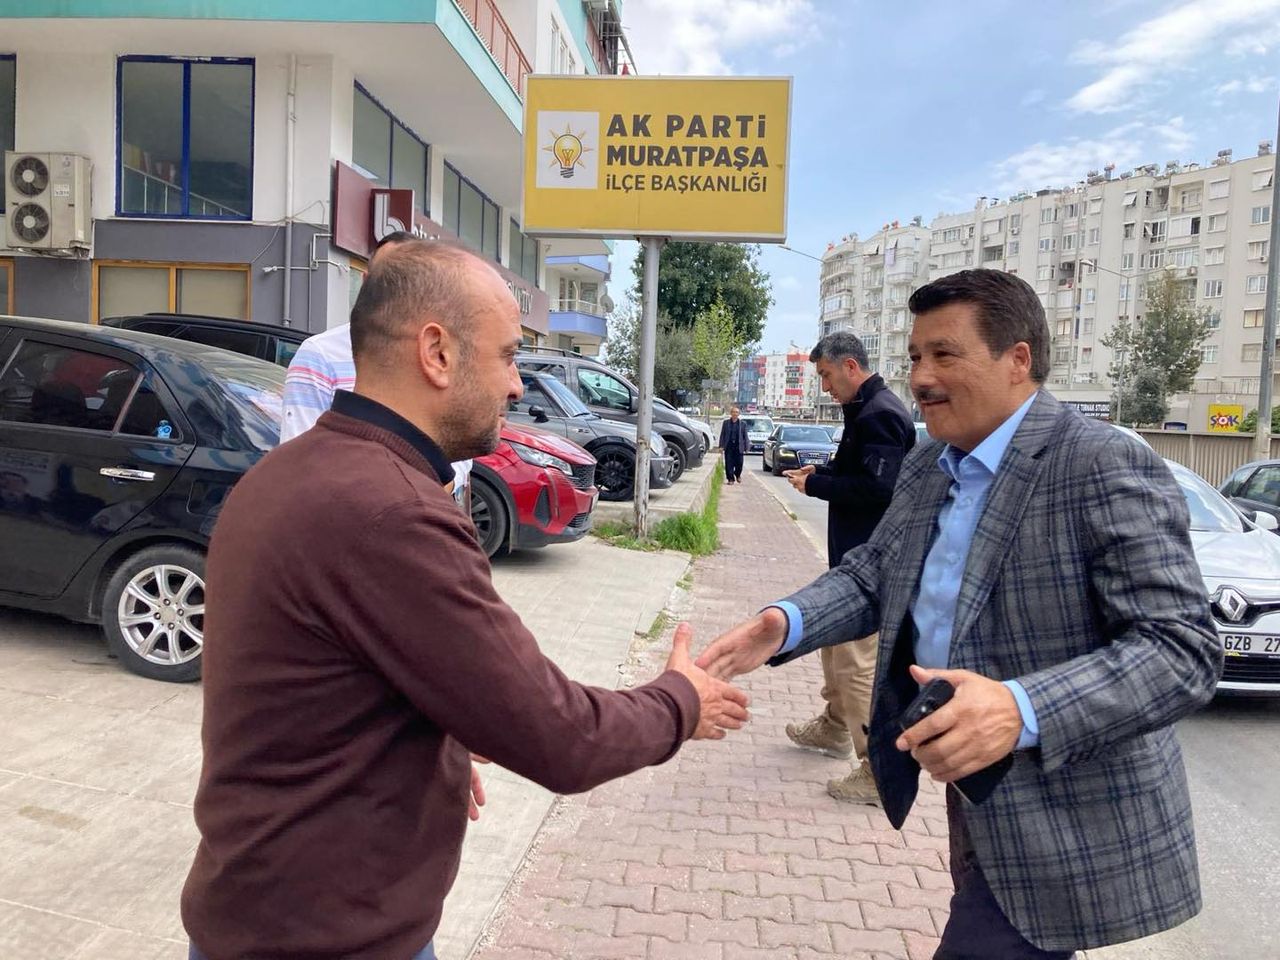 AK Parti Antalya Milletvekili Kemal Çelik, Muratpaşa Belediye Başkan adayı ve parti yöneticileriyle bir araya geldi.